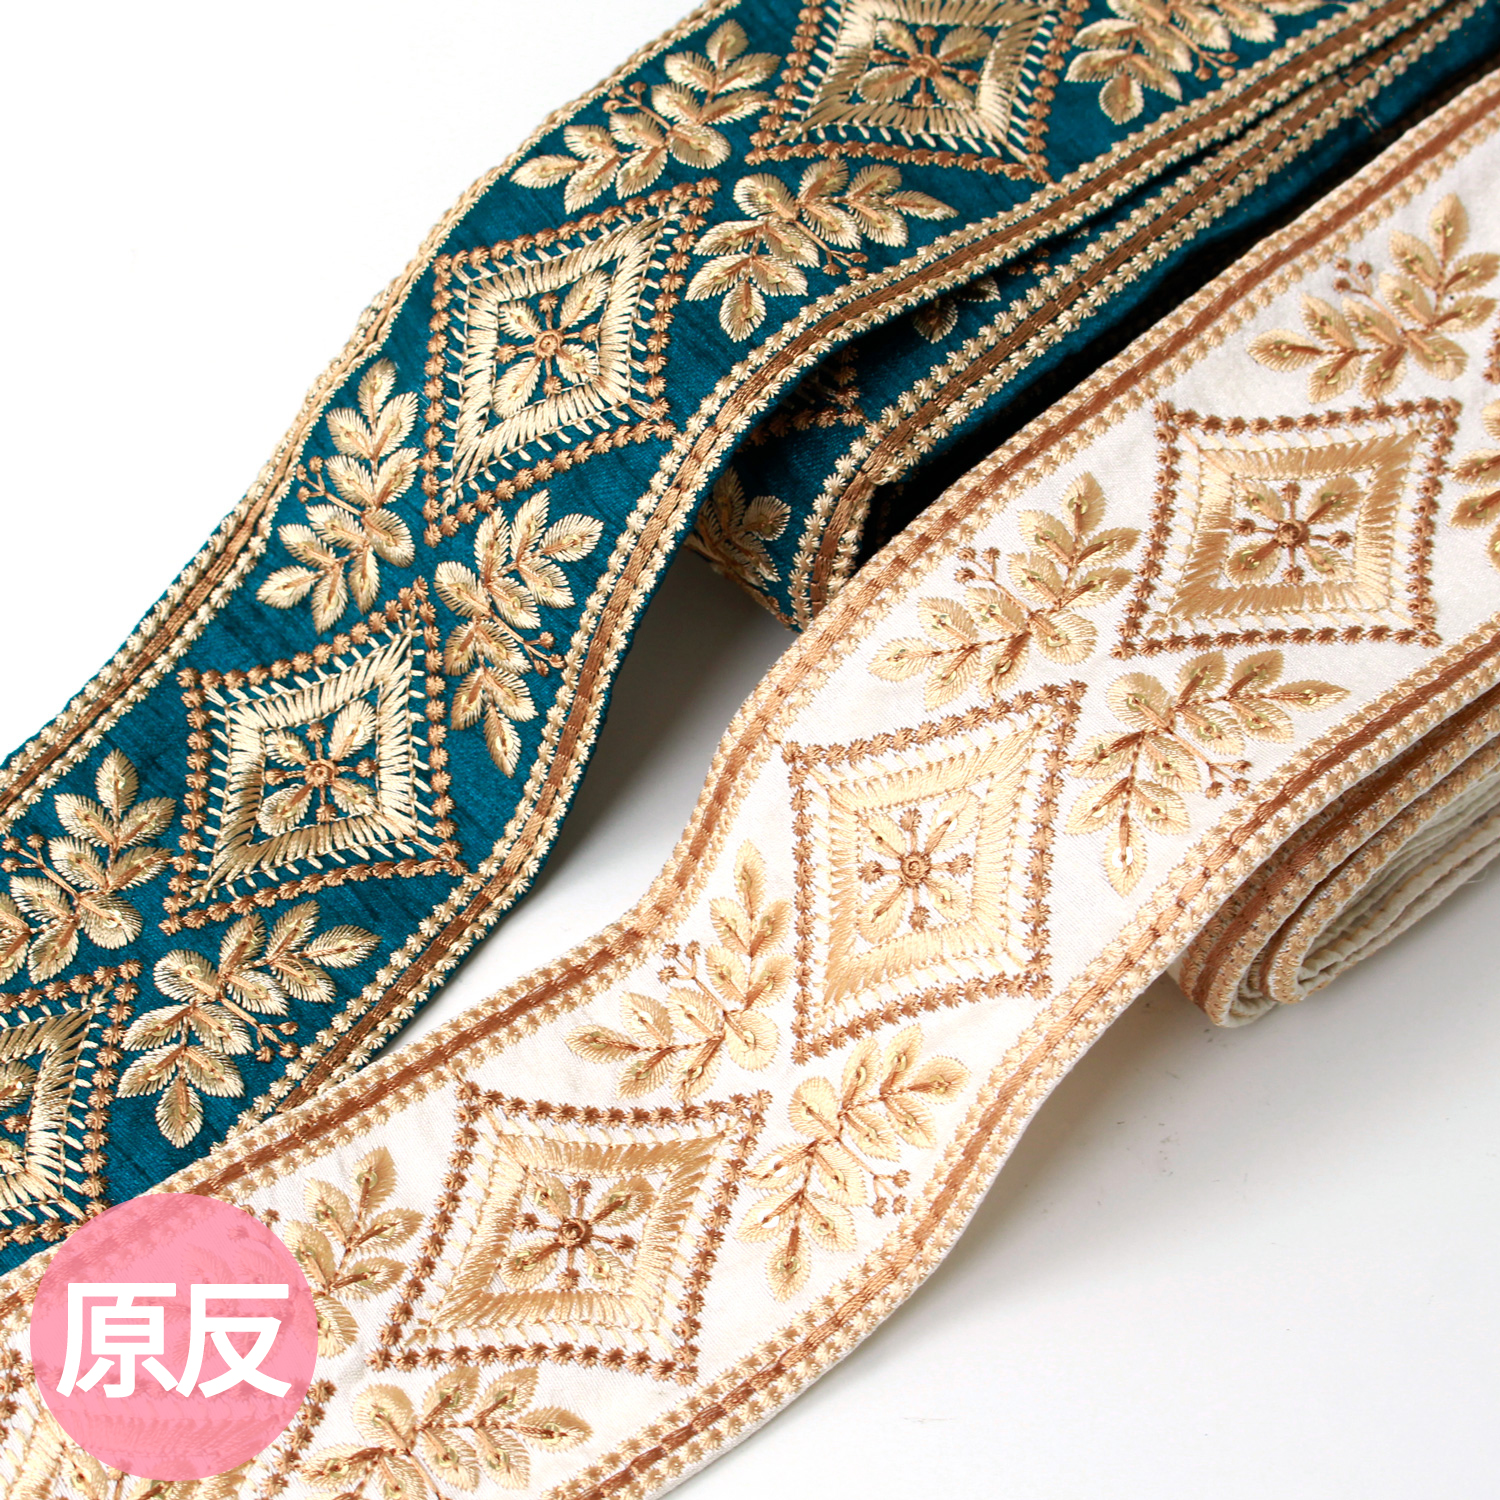 【0110新柄】KGKF-R45389 インド刺繍リボン 巾約7.7cm×原反約9m (巻)